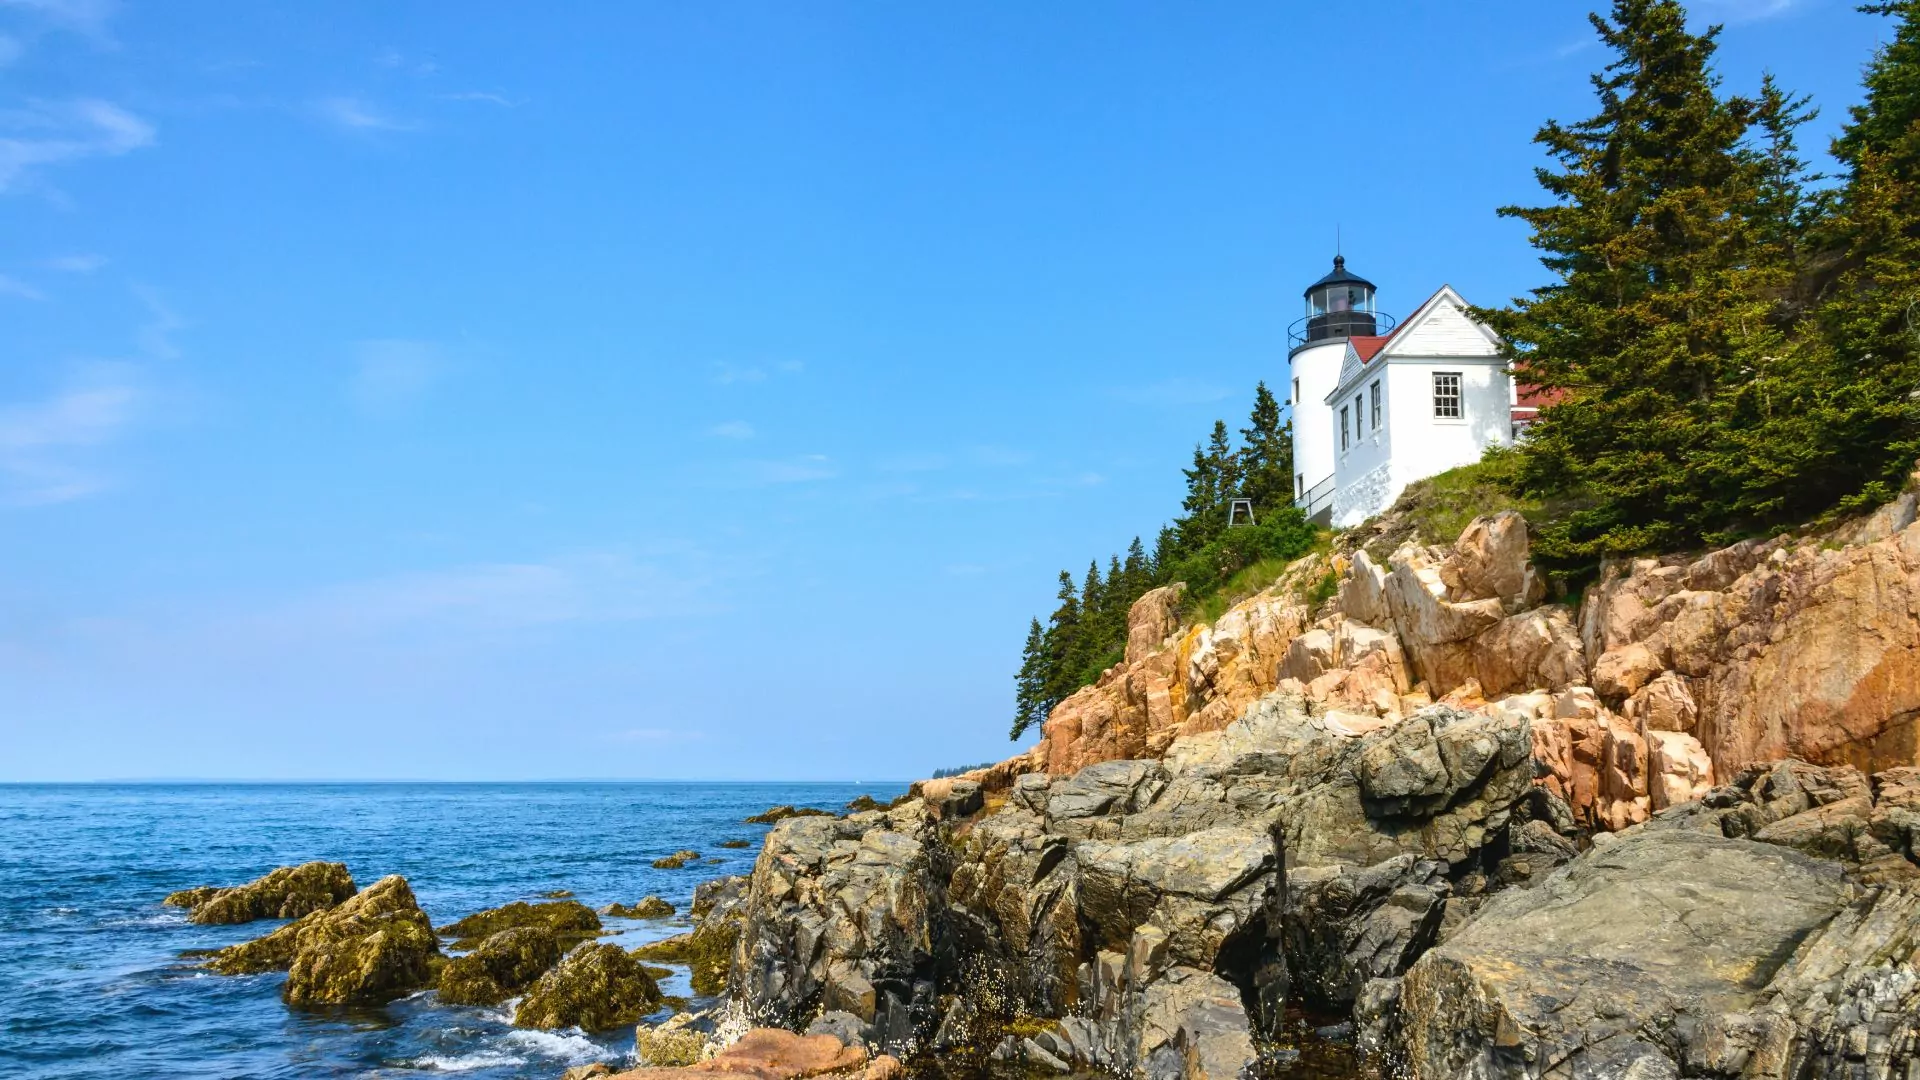 A lighthouse sits on the rocky Maine coast